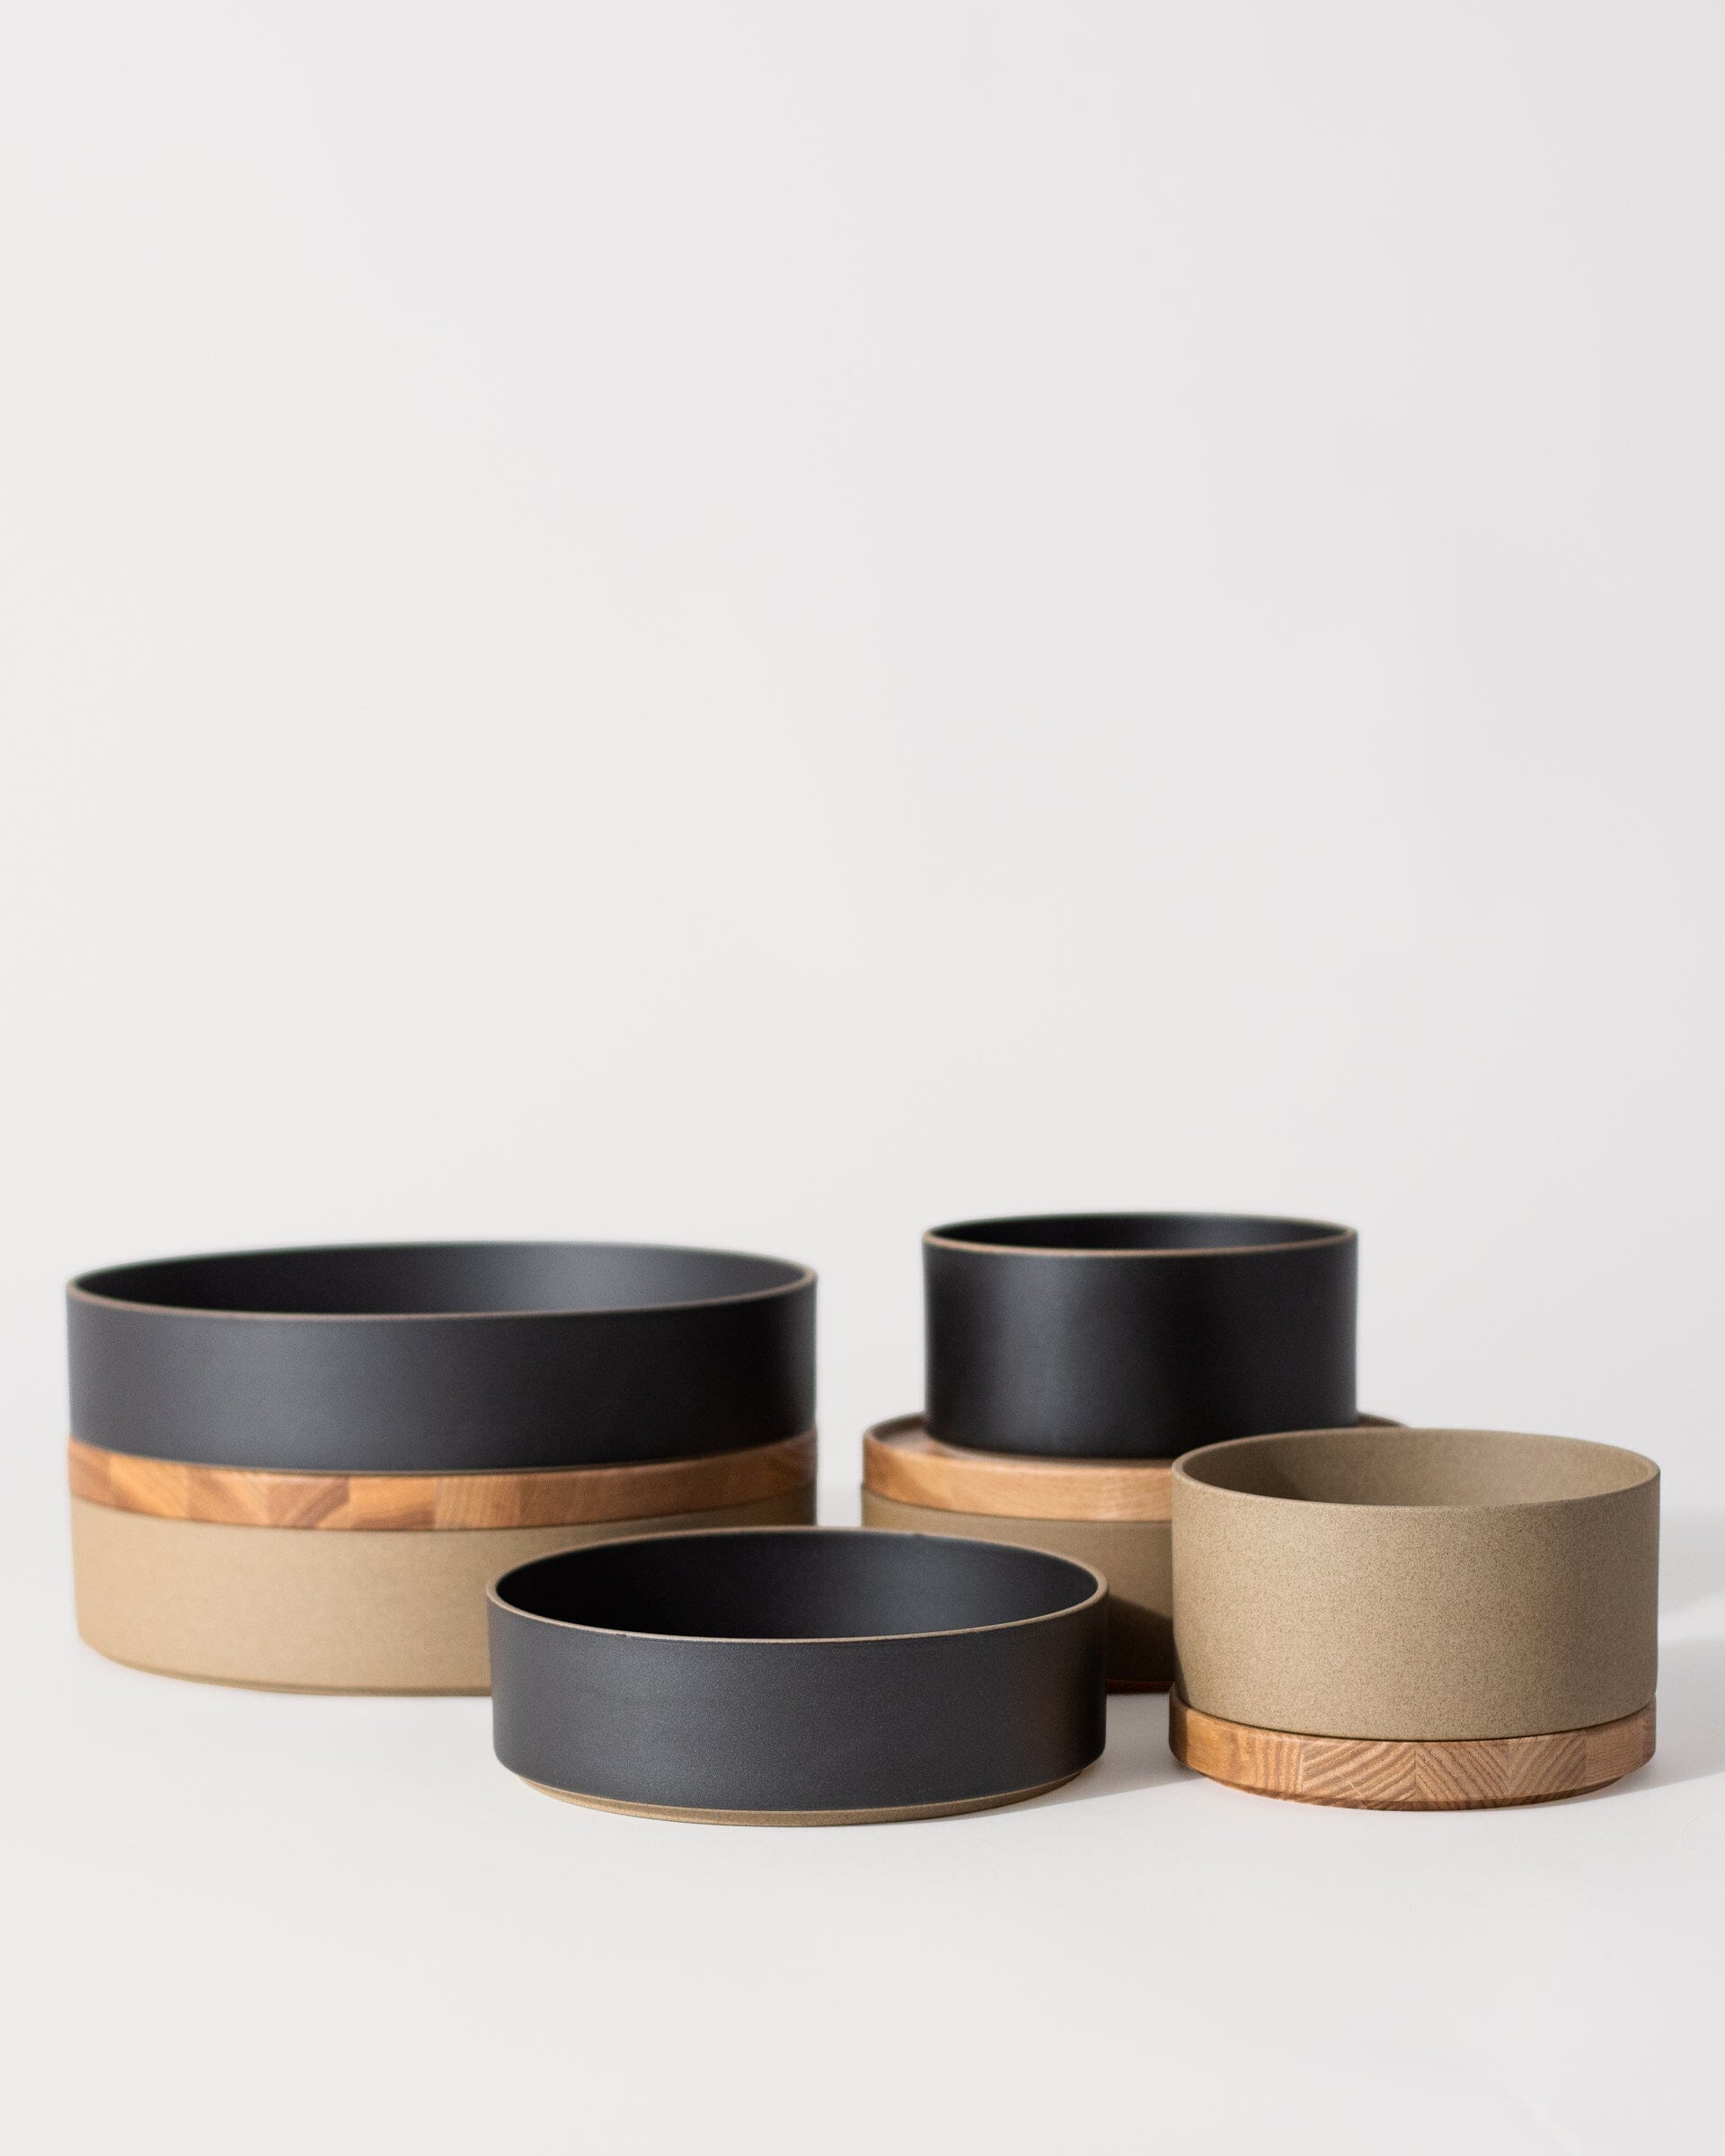 Hasami Ash Wooden Tray and Hasami Porcelain Bowl Group Shot